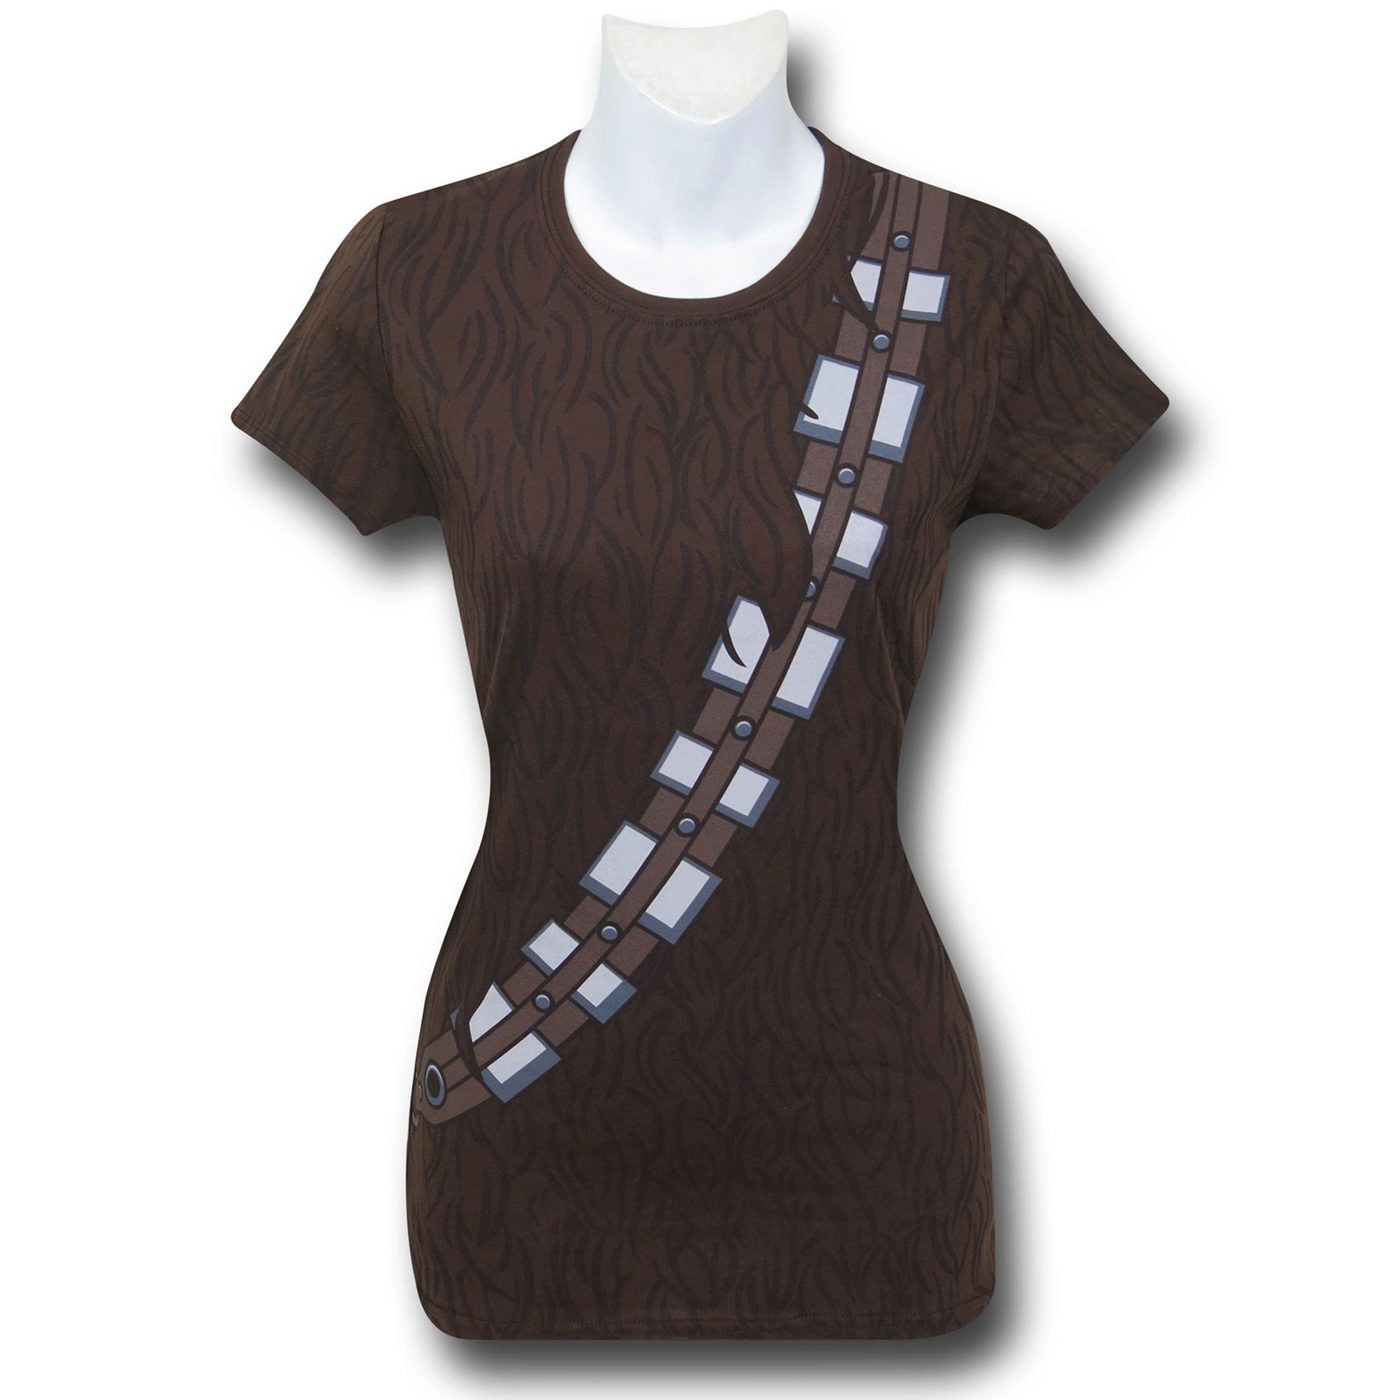 Star Wars Chewbacca Costume Women's T-Shirt